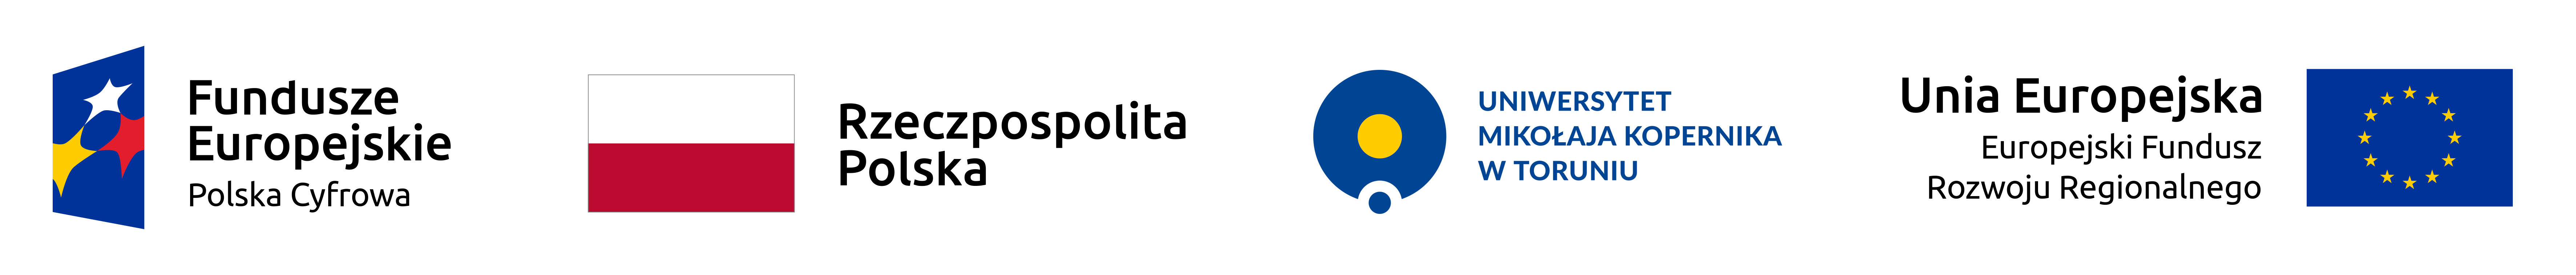 Logotyp Funduszy Unii Europejskiej, flaga Polski, Logotyp Uniwersytetu Mikołaja Kopernika w Toruniu i flaga Unii Europejskiej.